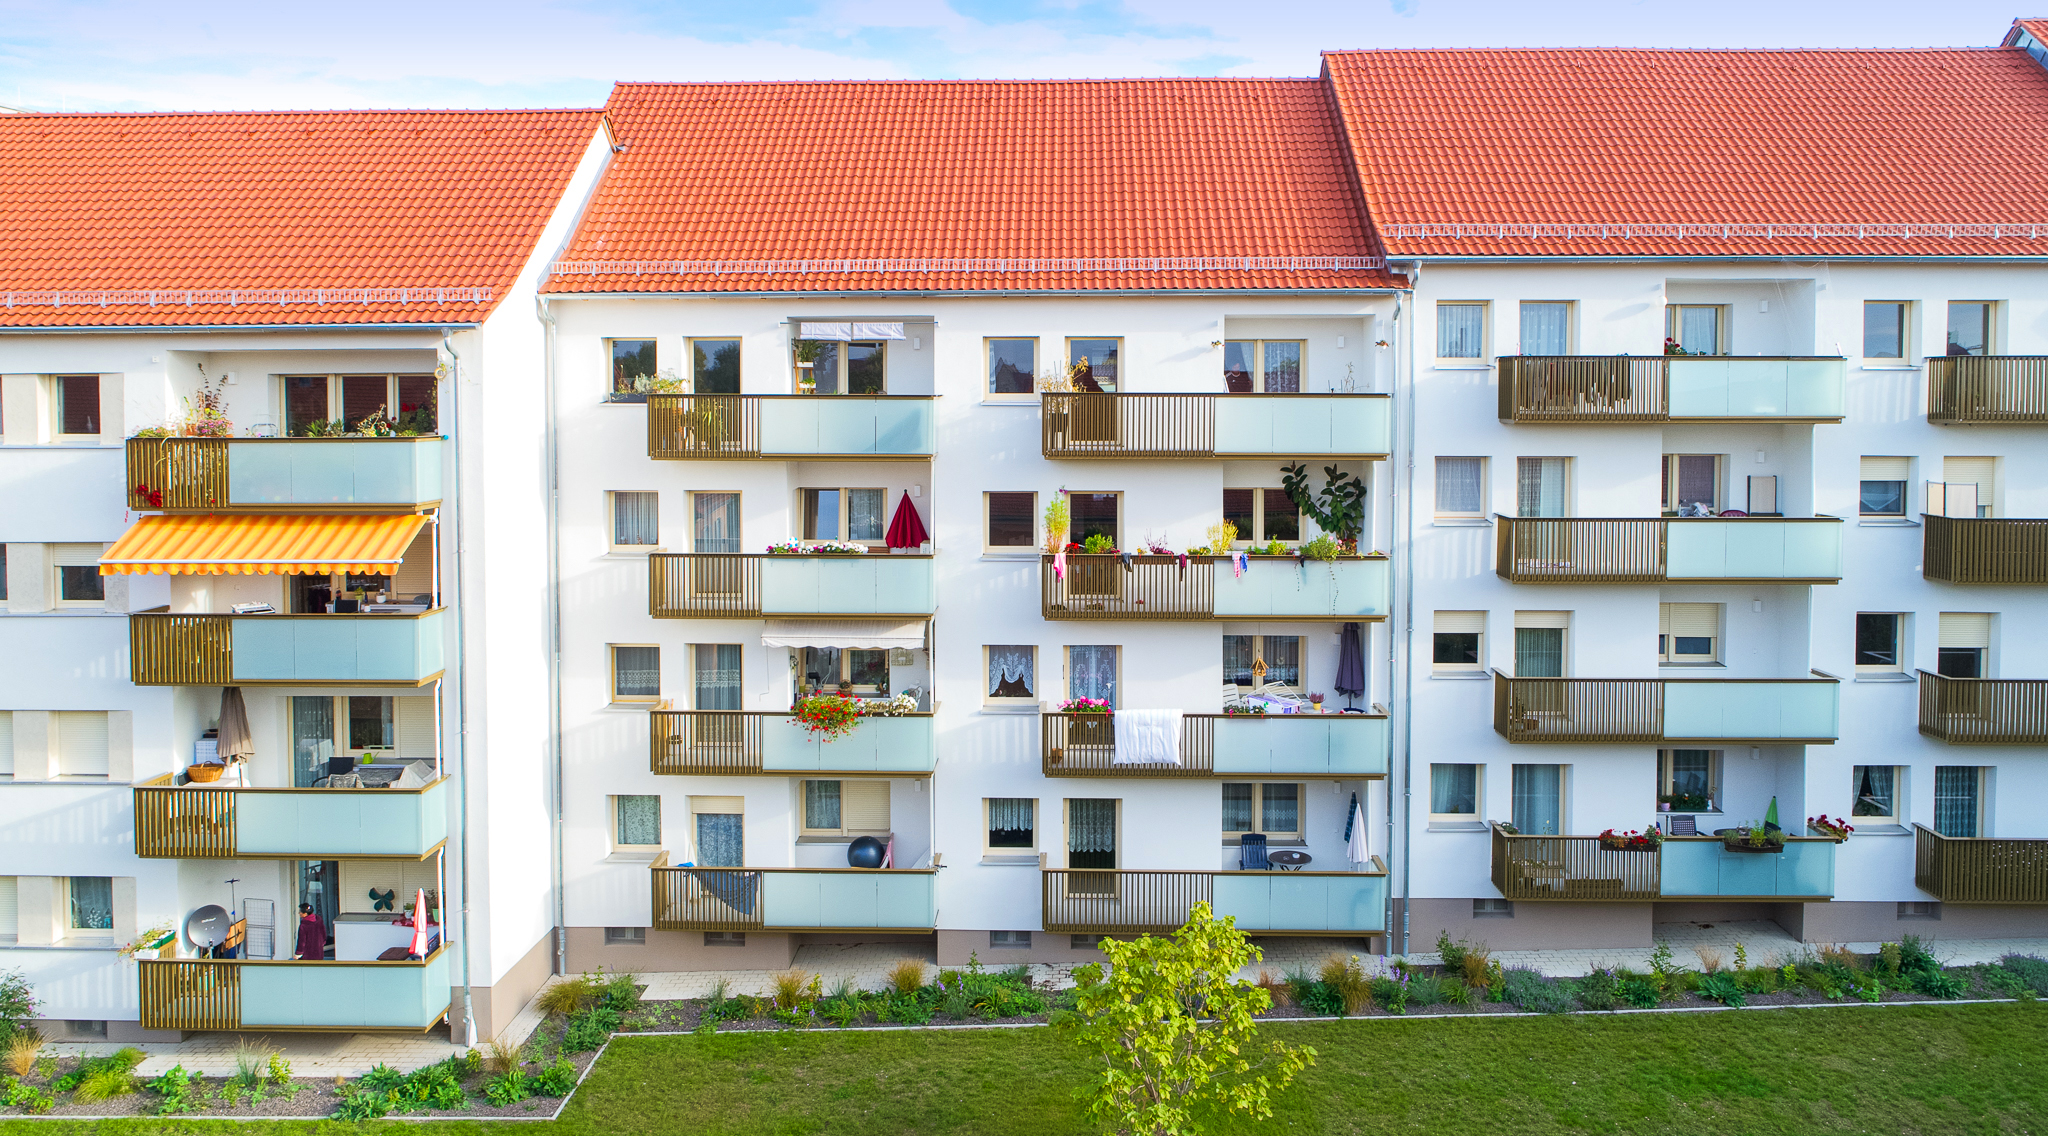 32 Balkone in Nürnberg